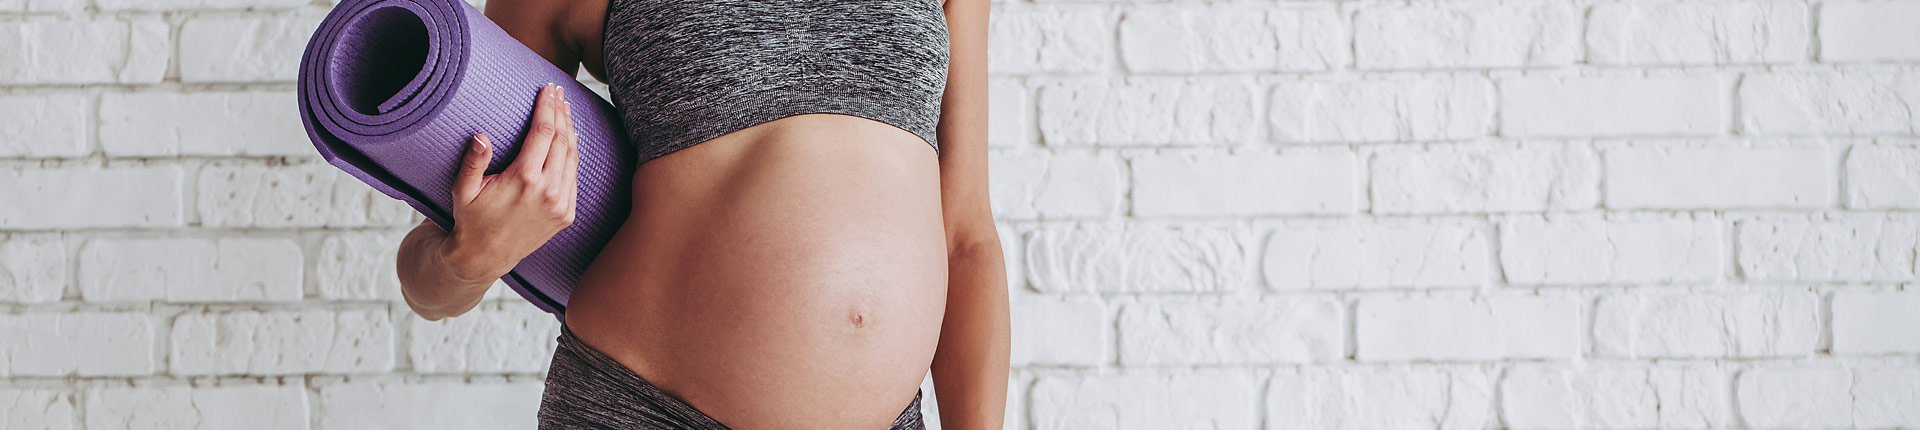 Jak bezpiecznie trenować w ciąży? O czym należy pamiętać?